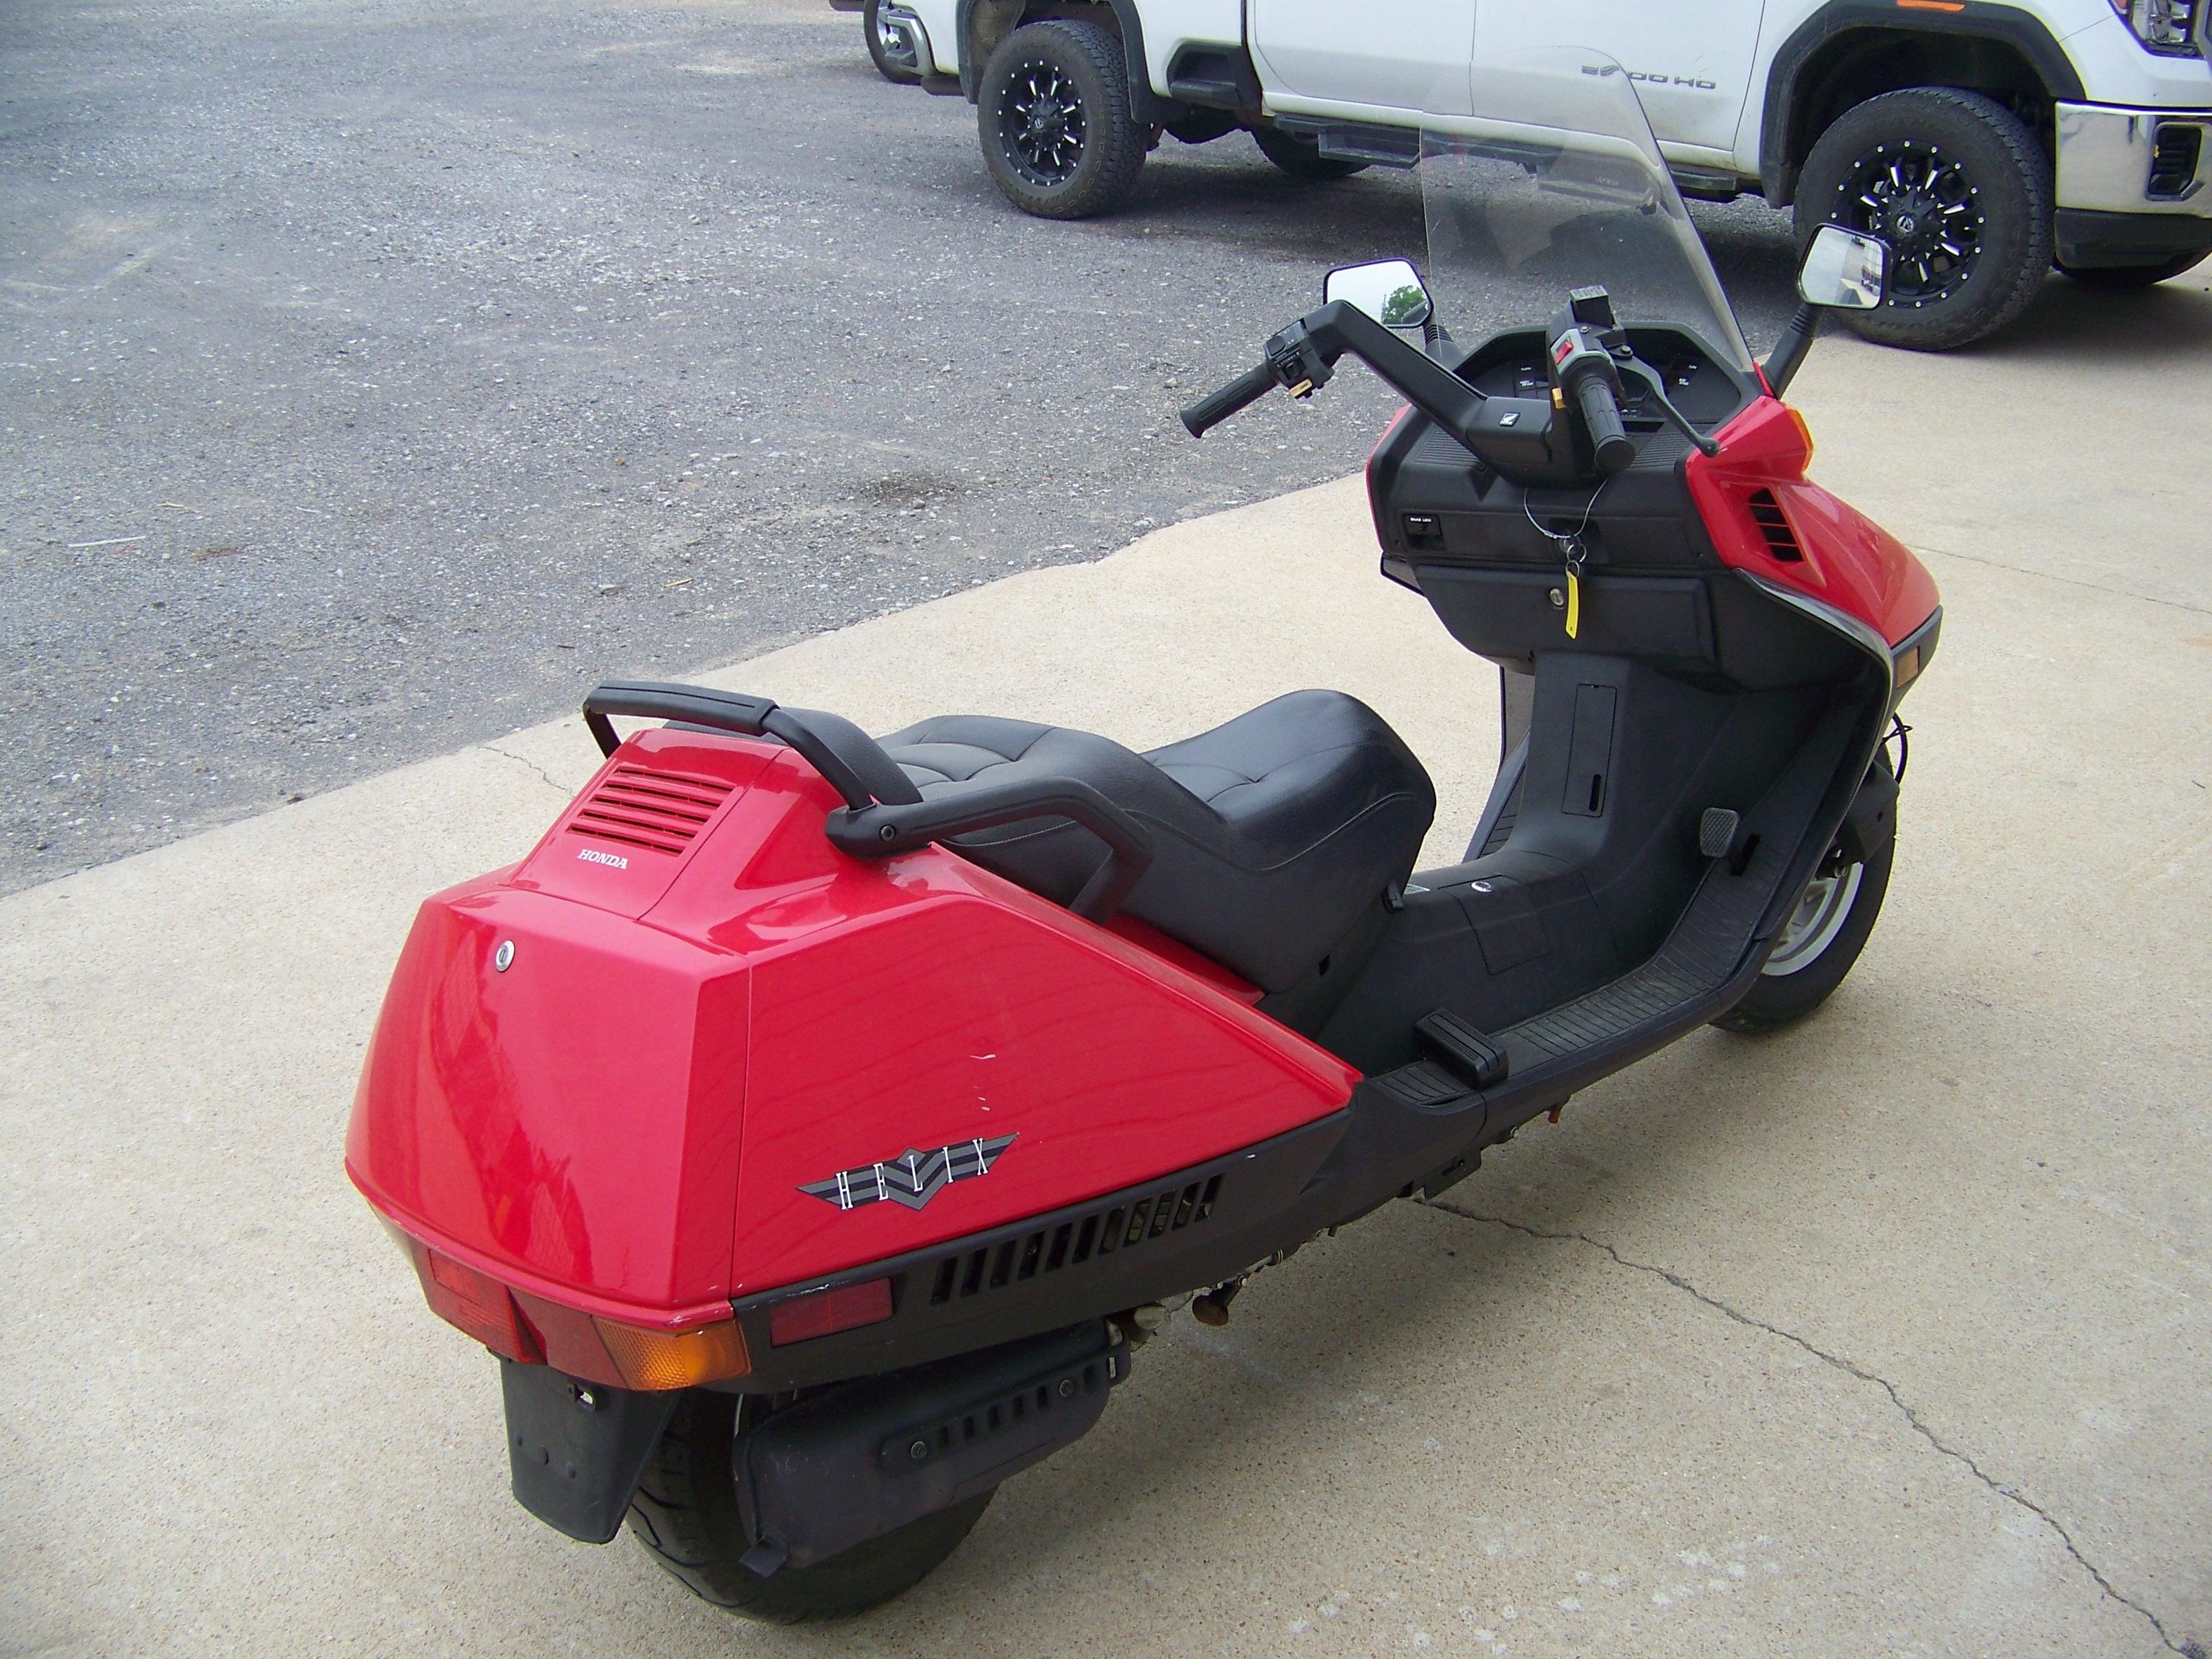 2006 Honda Helix MotorScooter